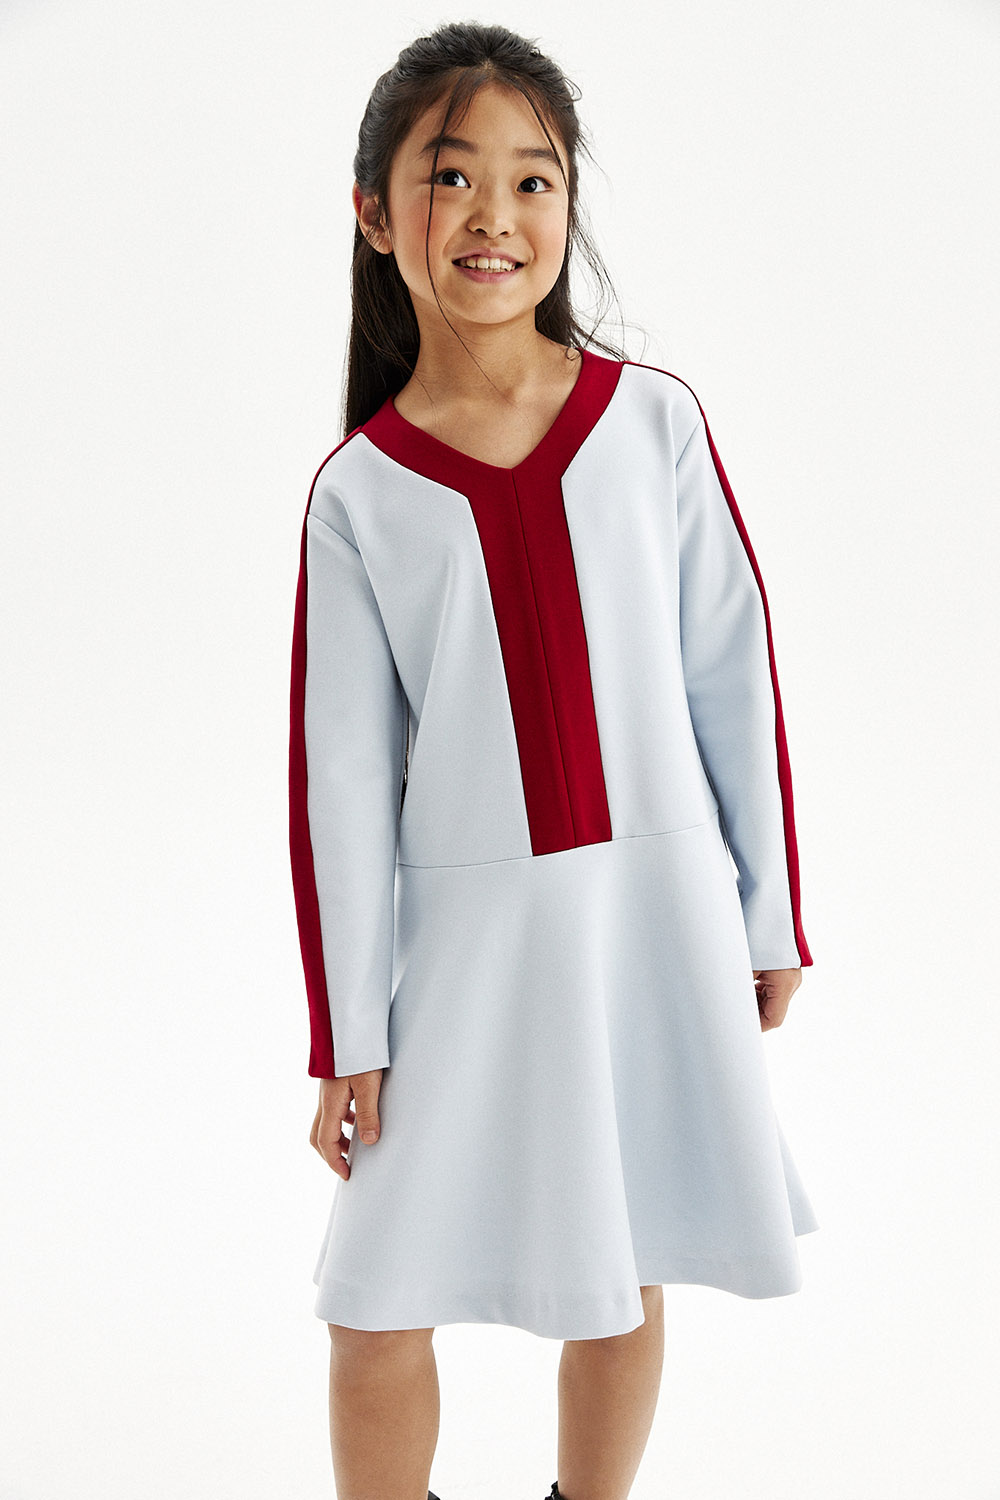 Платье в стиле color block из трикотажа milano jersey (SSLWG-228-23617-327) Silver Spoon